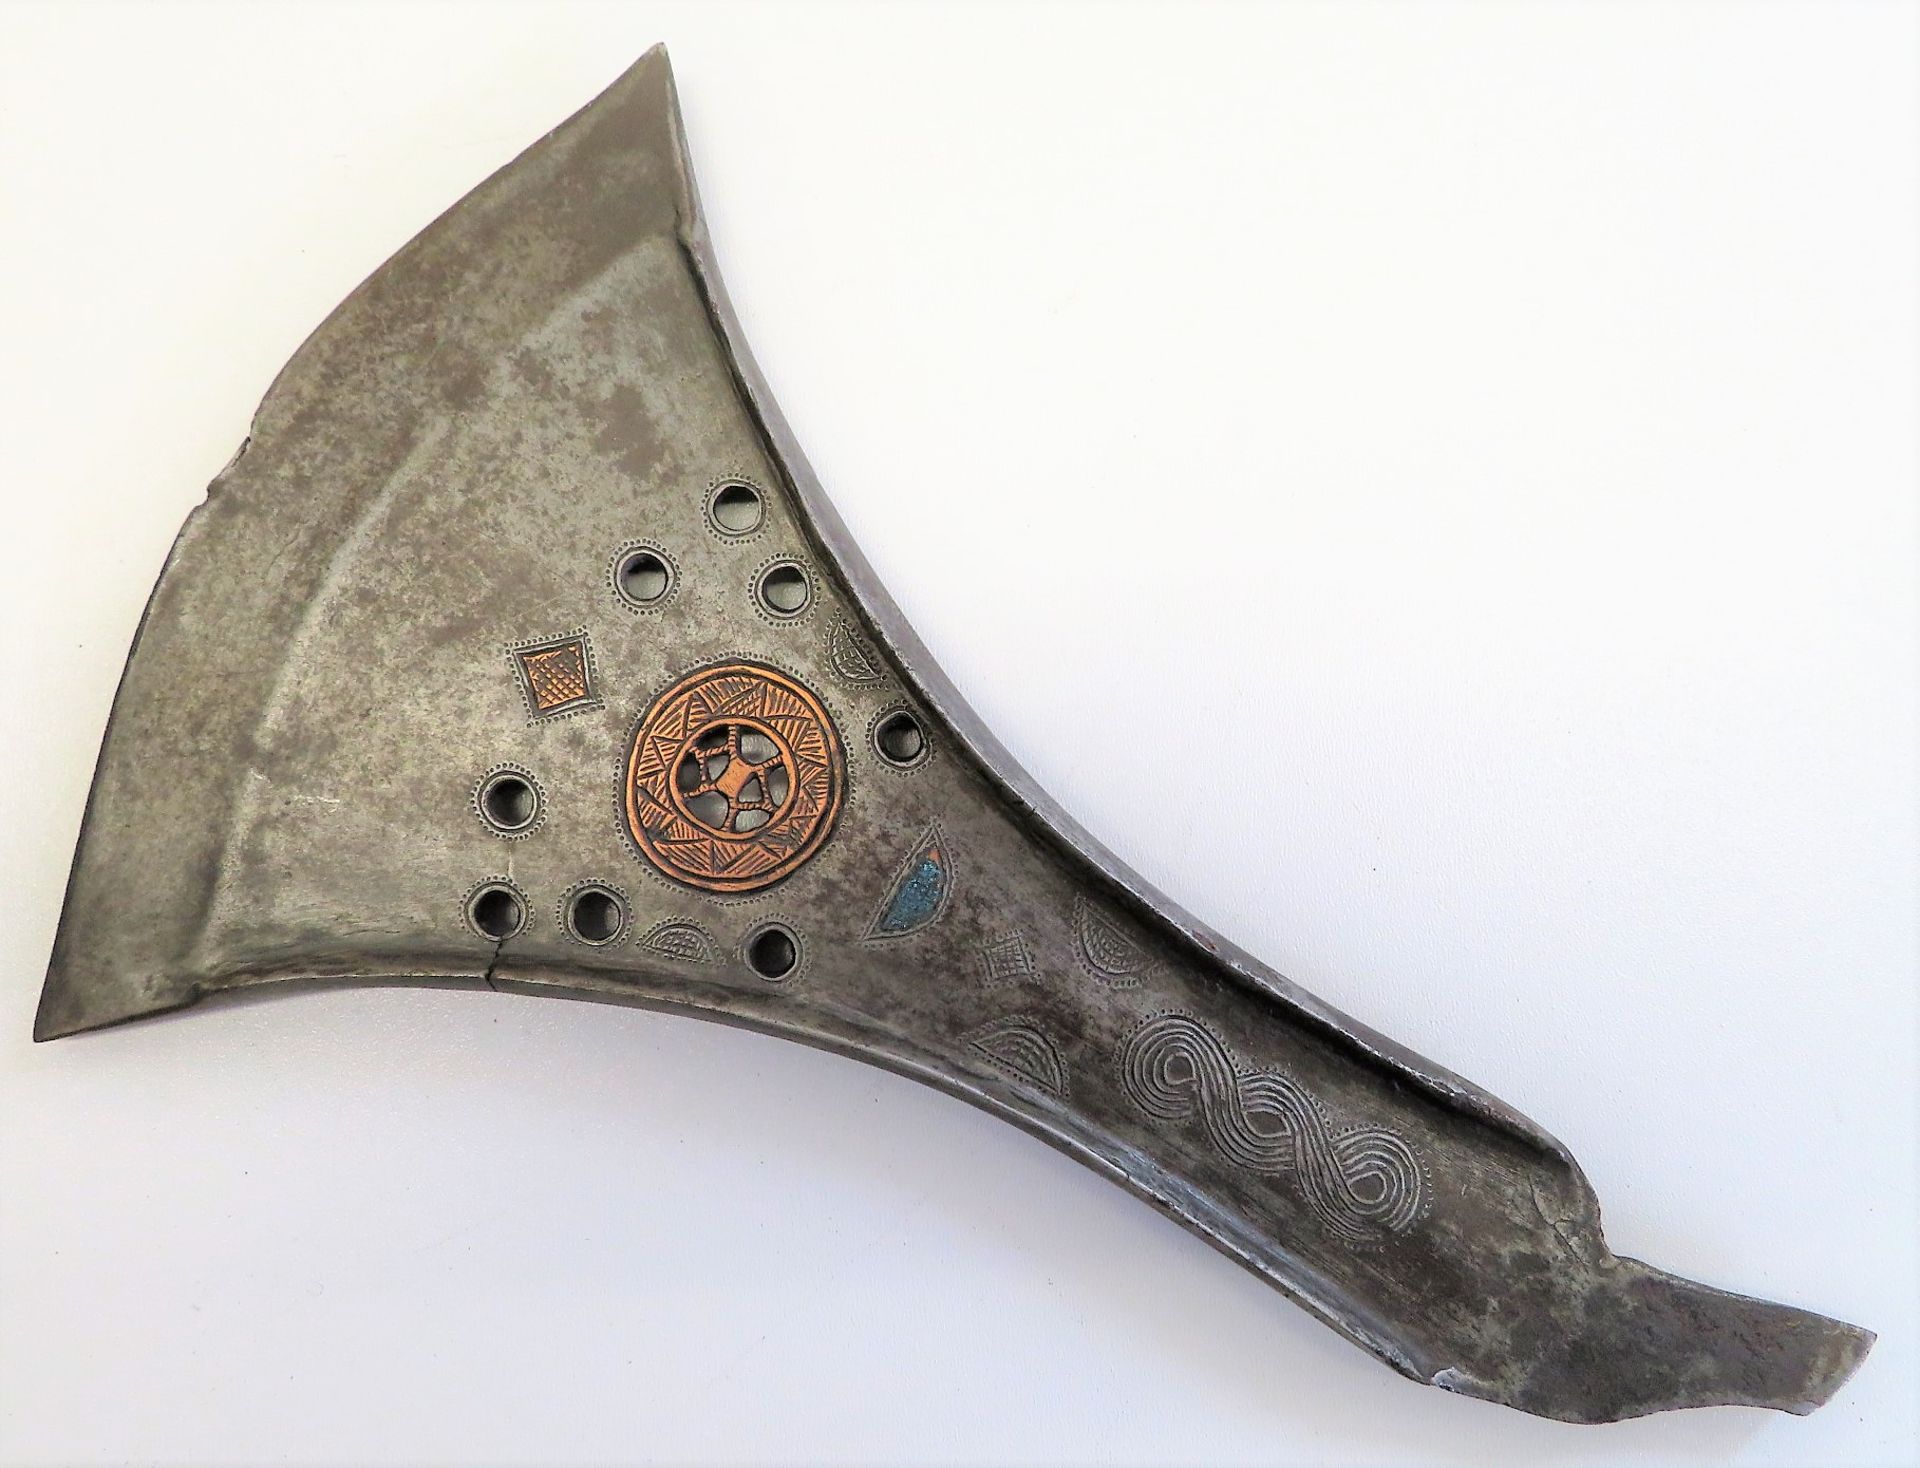 Antike Axt, Orient, Kupfer und Eisen mit reicher Verzierung, l 25 cm, b 16 cm. - Bild 2 aus 2